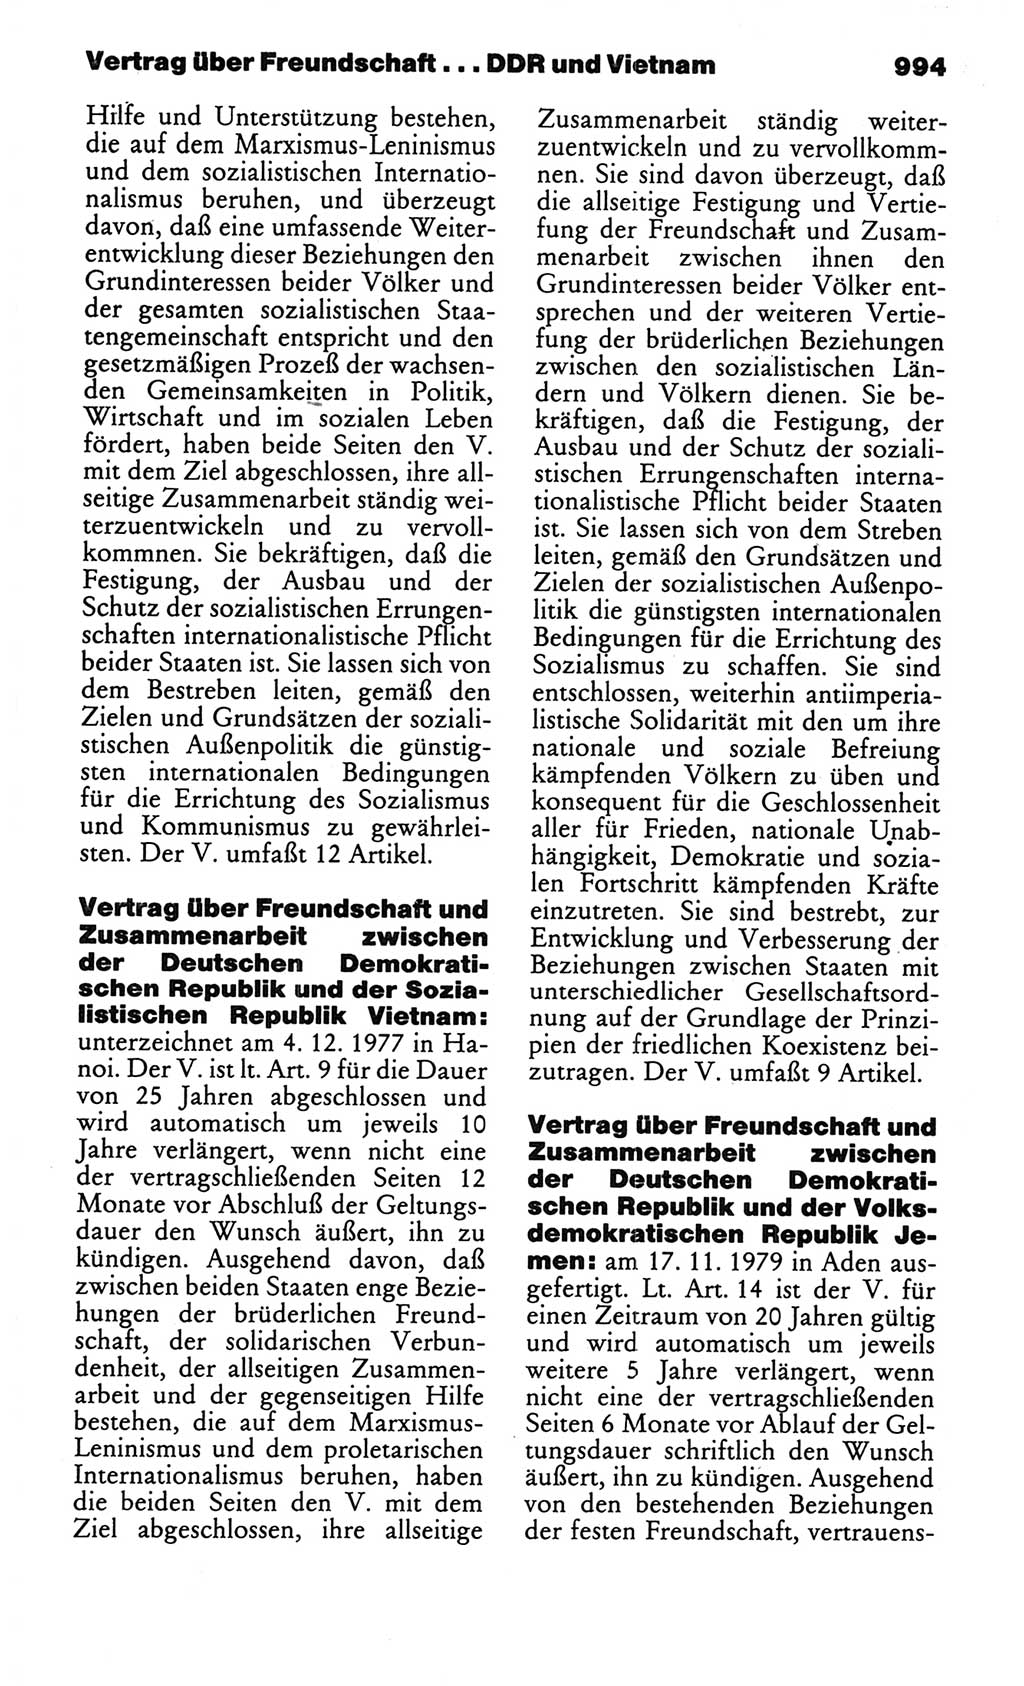 Kleines politisches Wörterbuch [Deutsche Demokratische Republik (DDR)] 1986, Seite 994 (Kl. pol. Wb. DDR 1986, S. 994)